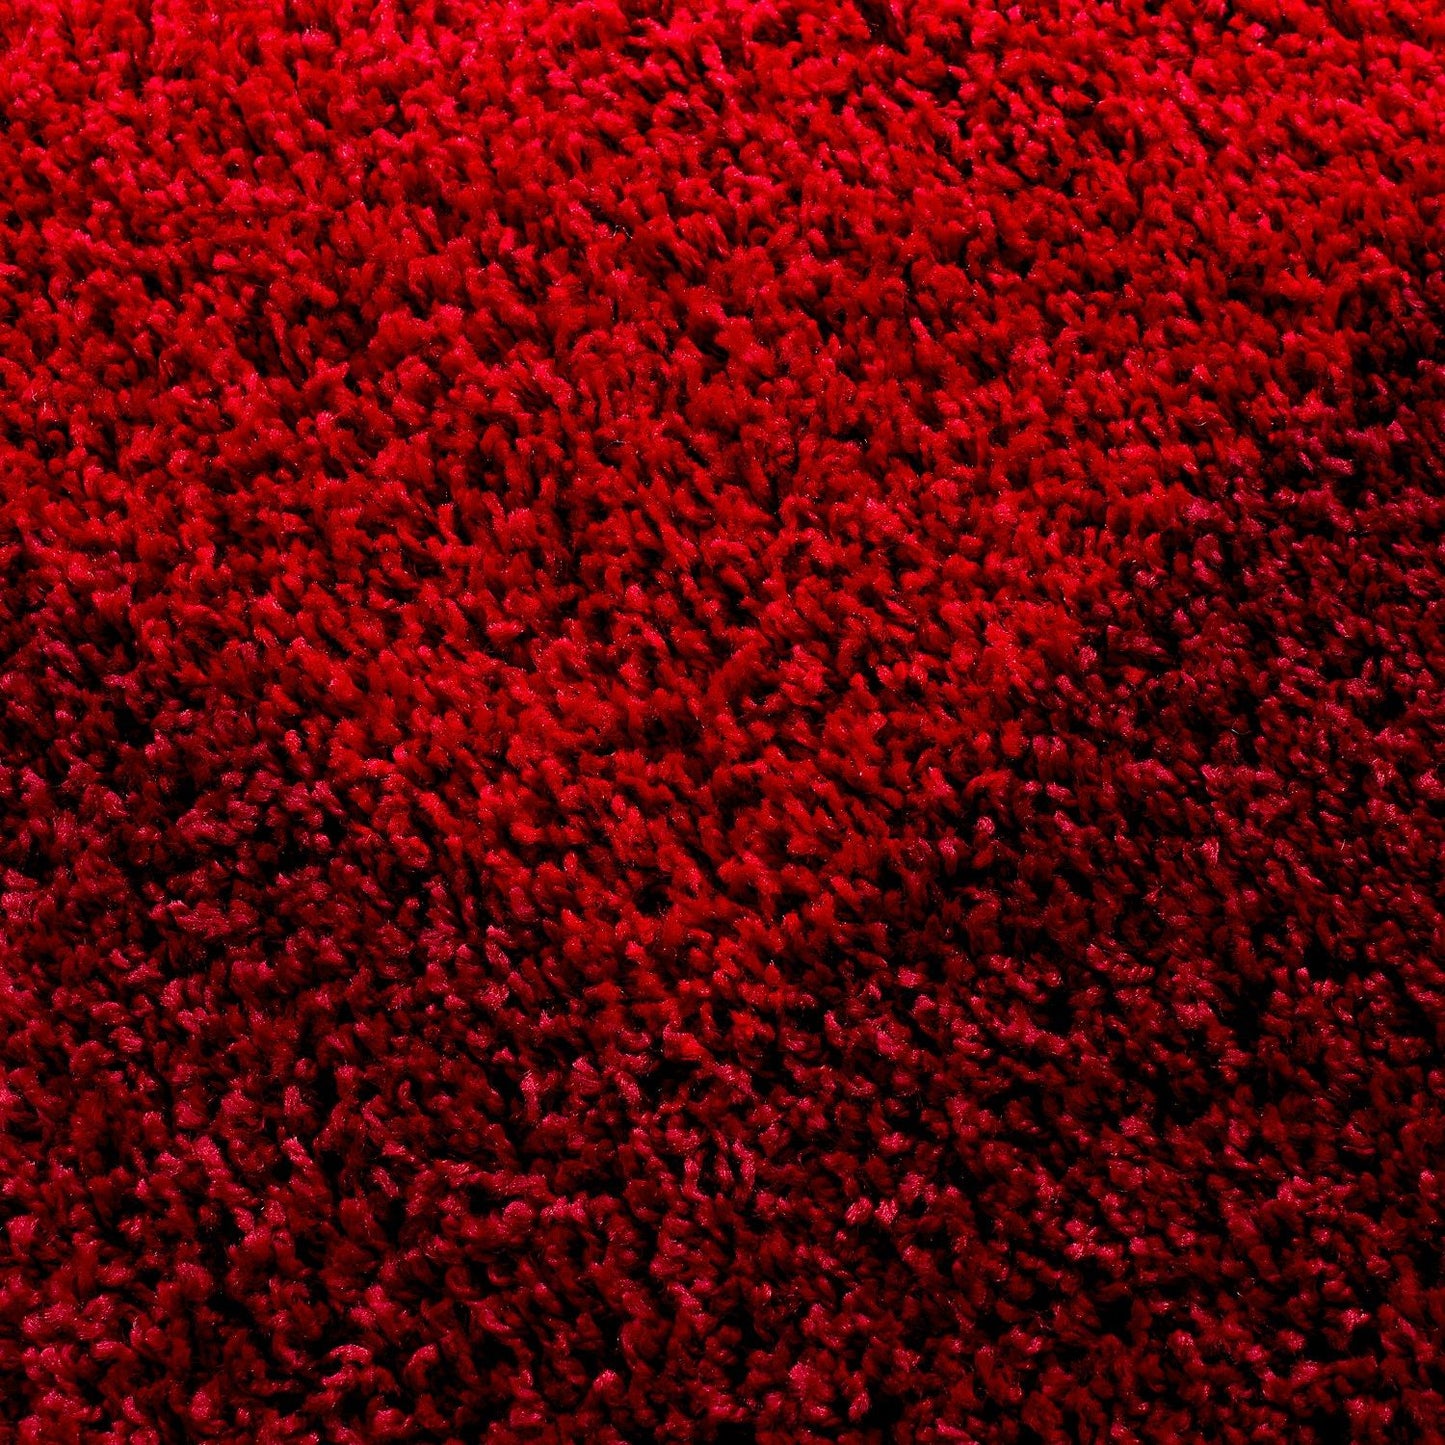 LIFE1503RED Tæppe (160 x 230) - Rød